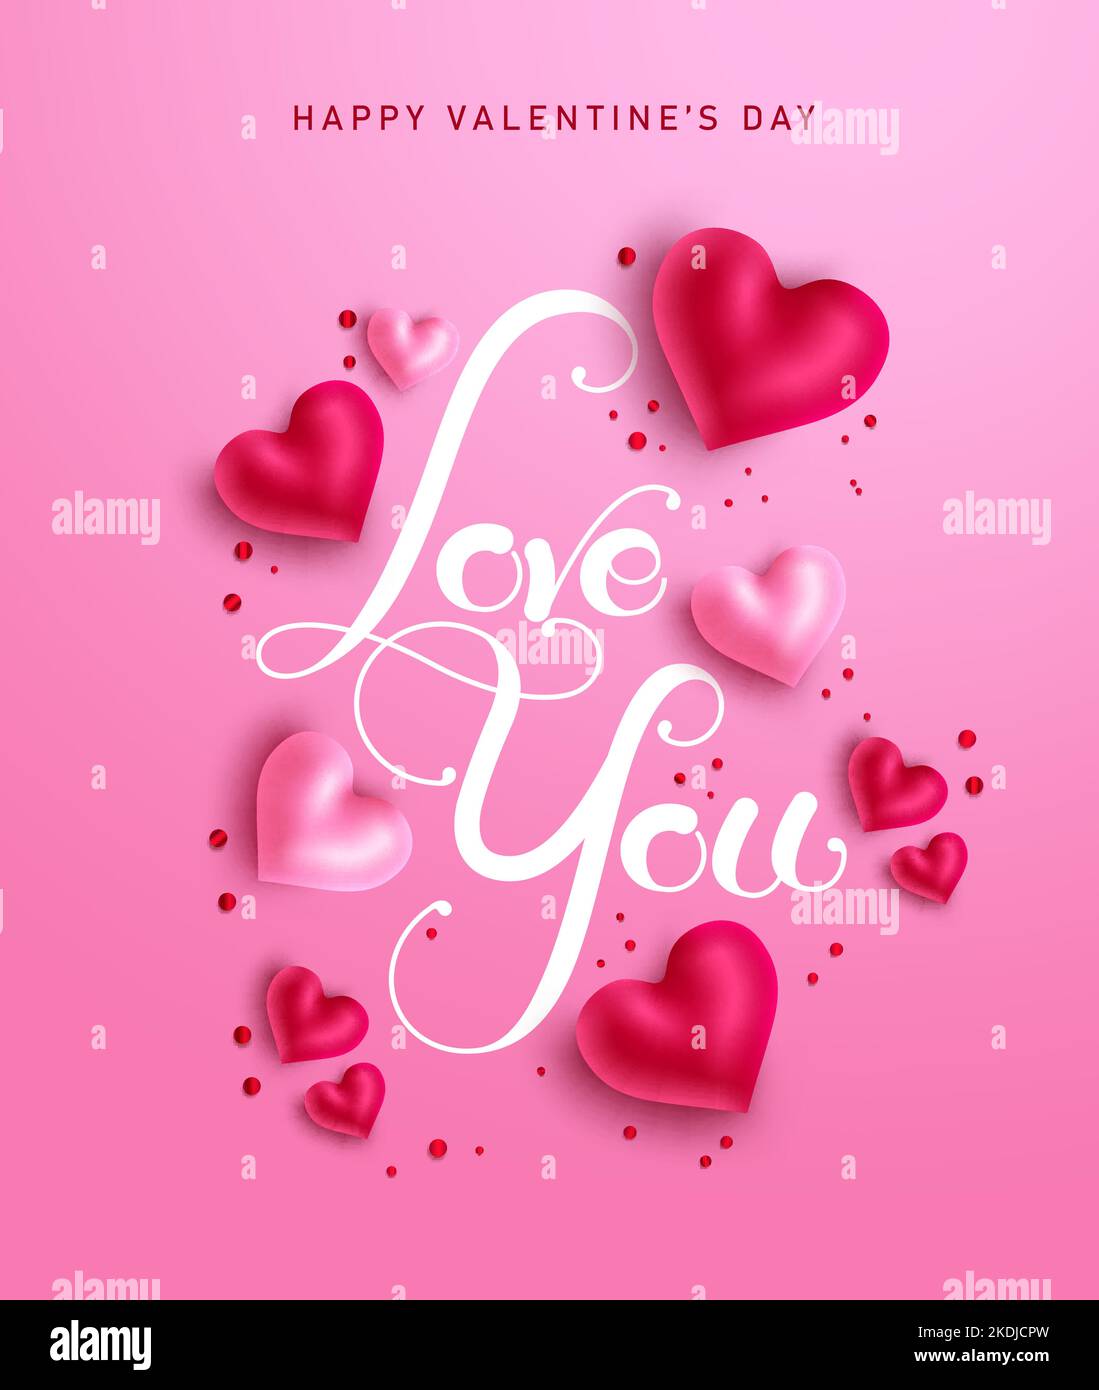 Motif poster vecteur de Saint-Valentin. Love You typographie texte avec cute coeurs dans fond rose pour Valentin romantique carte de voeux décoration. Illustration de Vecteur